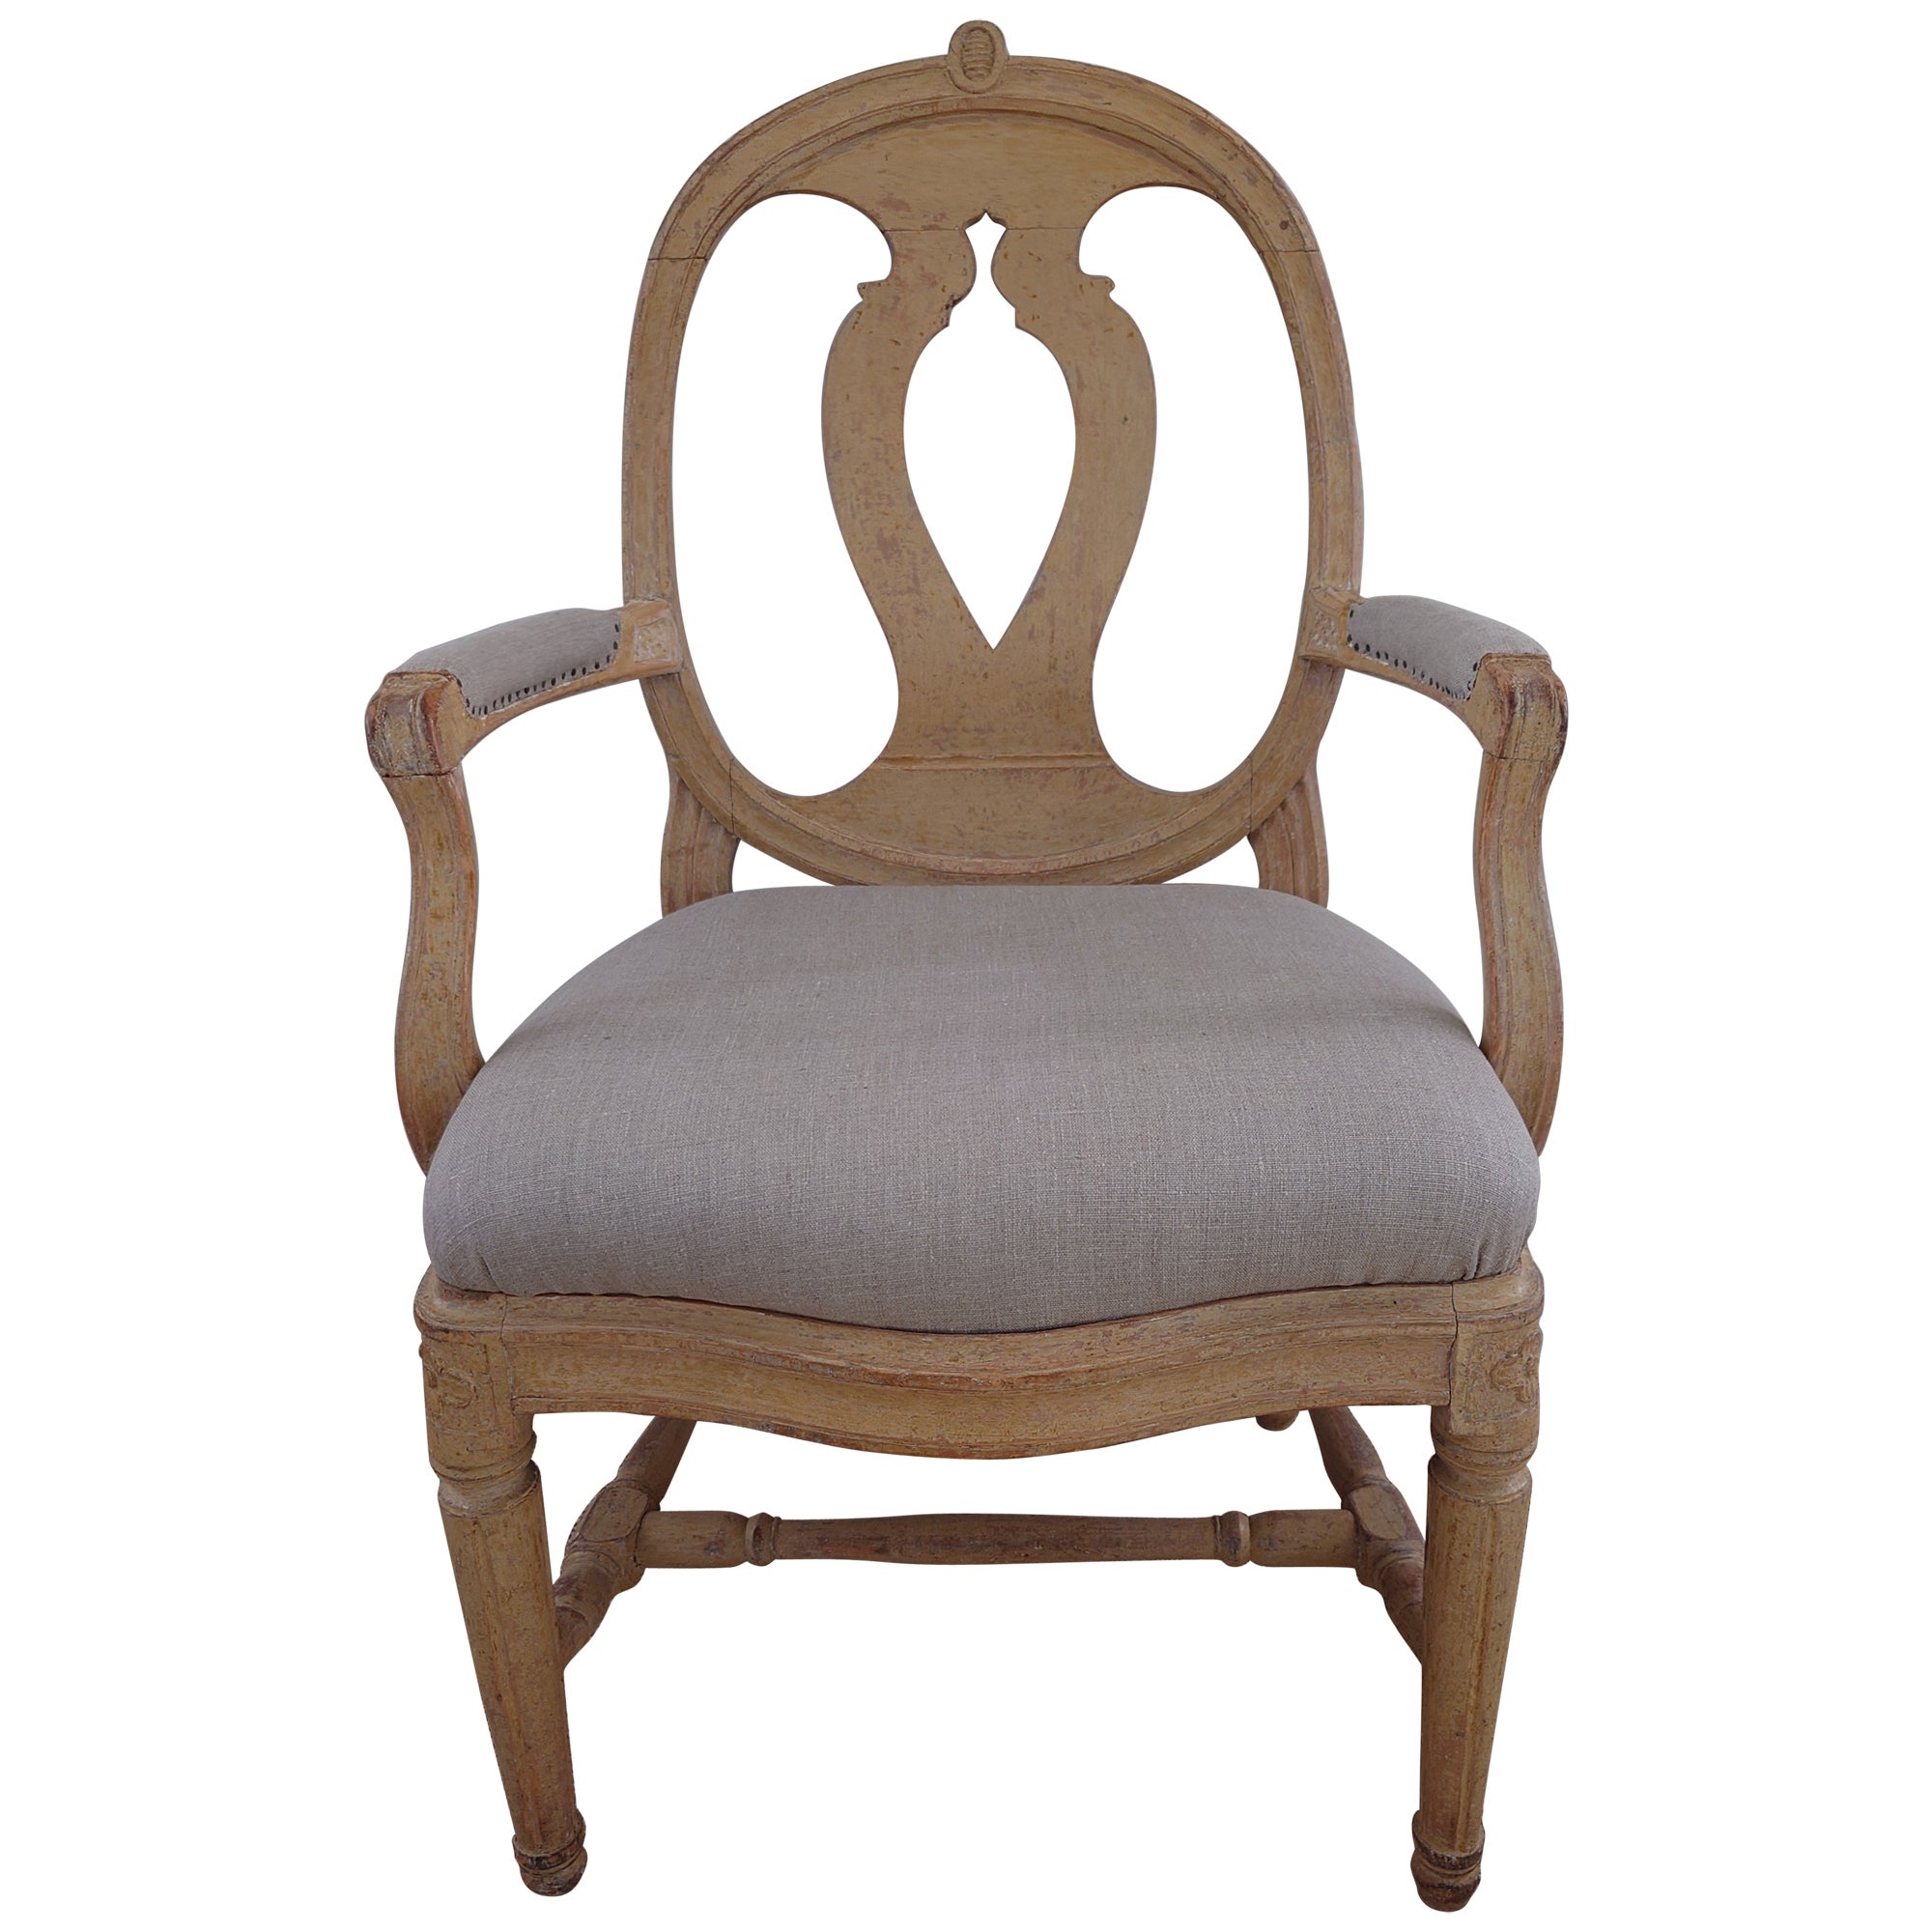 Schwedischer antiker, echter Gustavianischer Sessel aus dem 18. Jahrhundert mit Originallackierung.